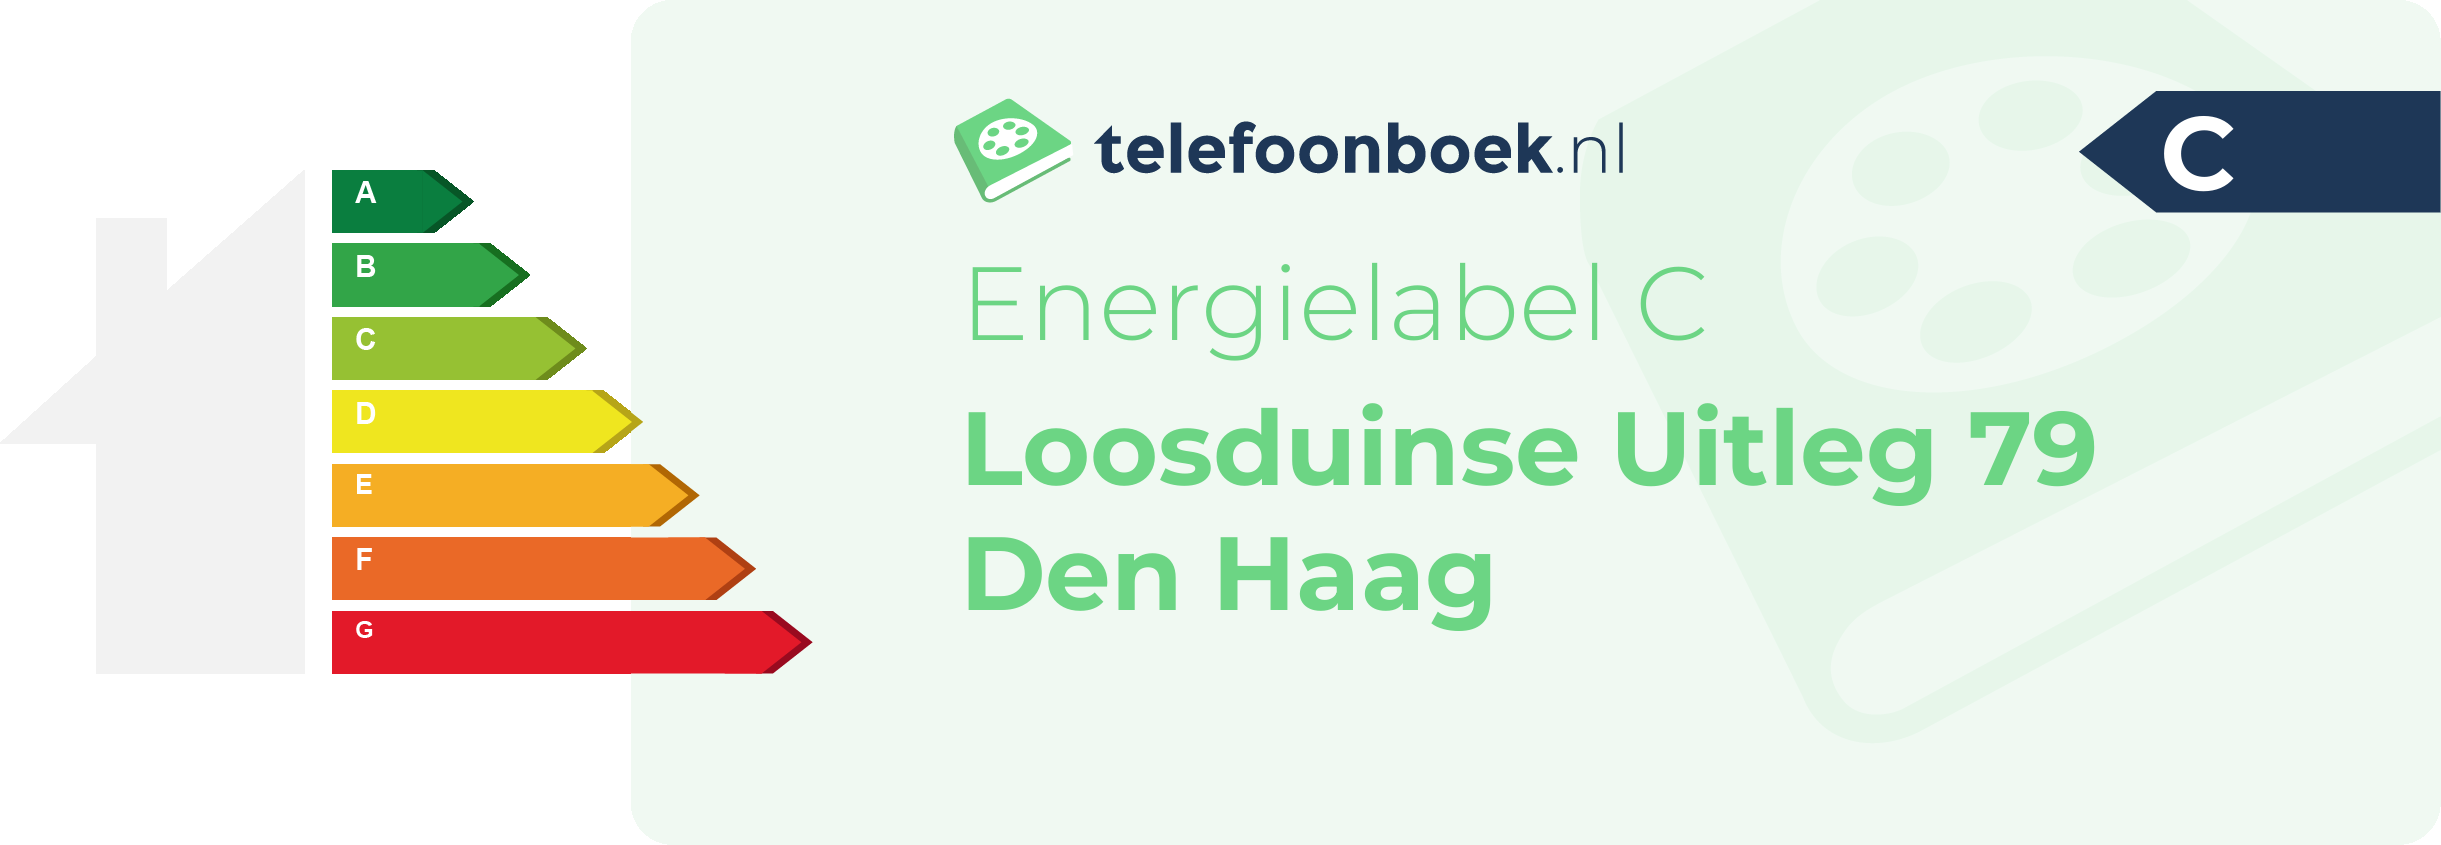 Energielabel Loosduinse Uitleg 79 Den Haag